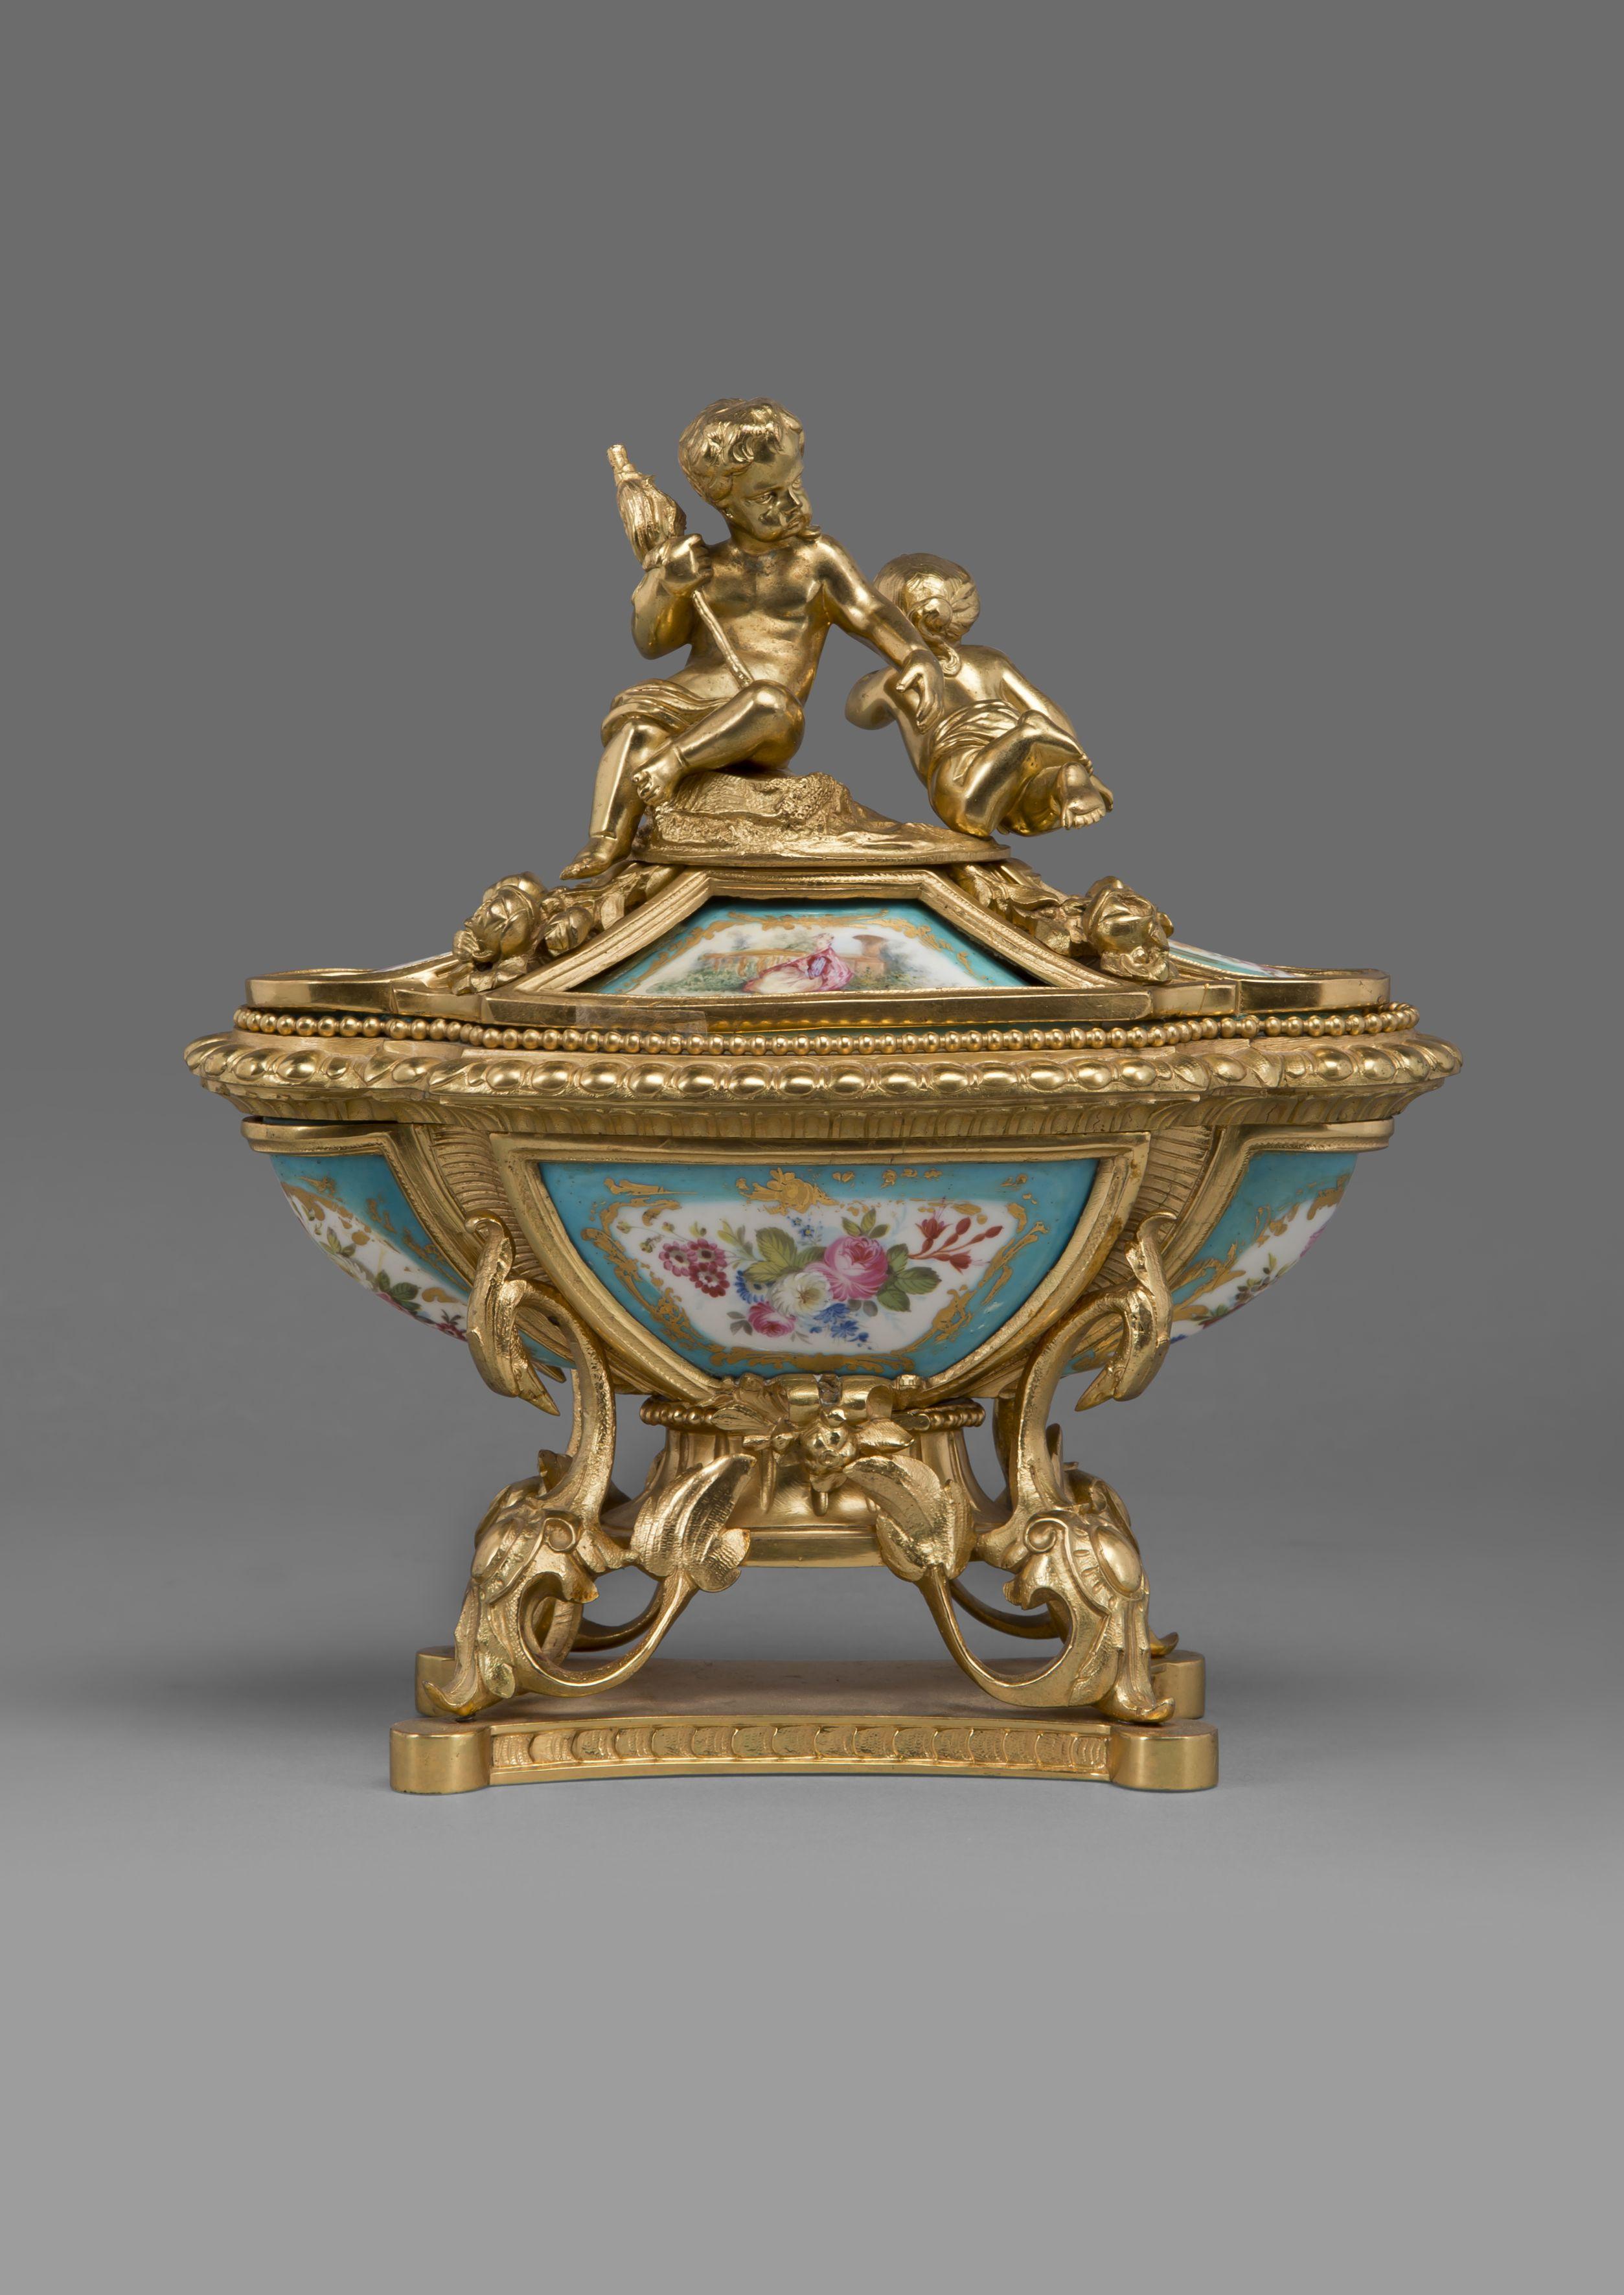 Un bel encrier de style Louis XV en bronze doré et en porcelaine de Sèvres.

Français, vers 1890. 

Cet encrier élégant et sophistiqué a la forme d'un sarcophage avec des panneaux en porcelaine finement peints représentant la fête champêtre et